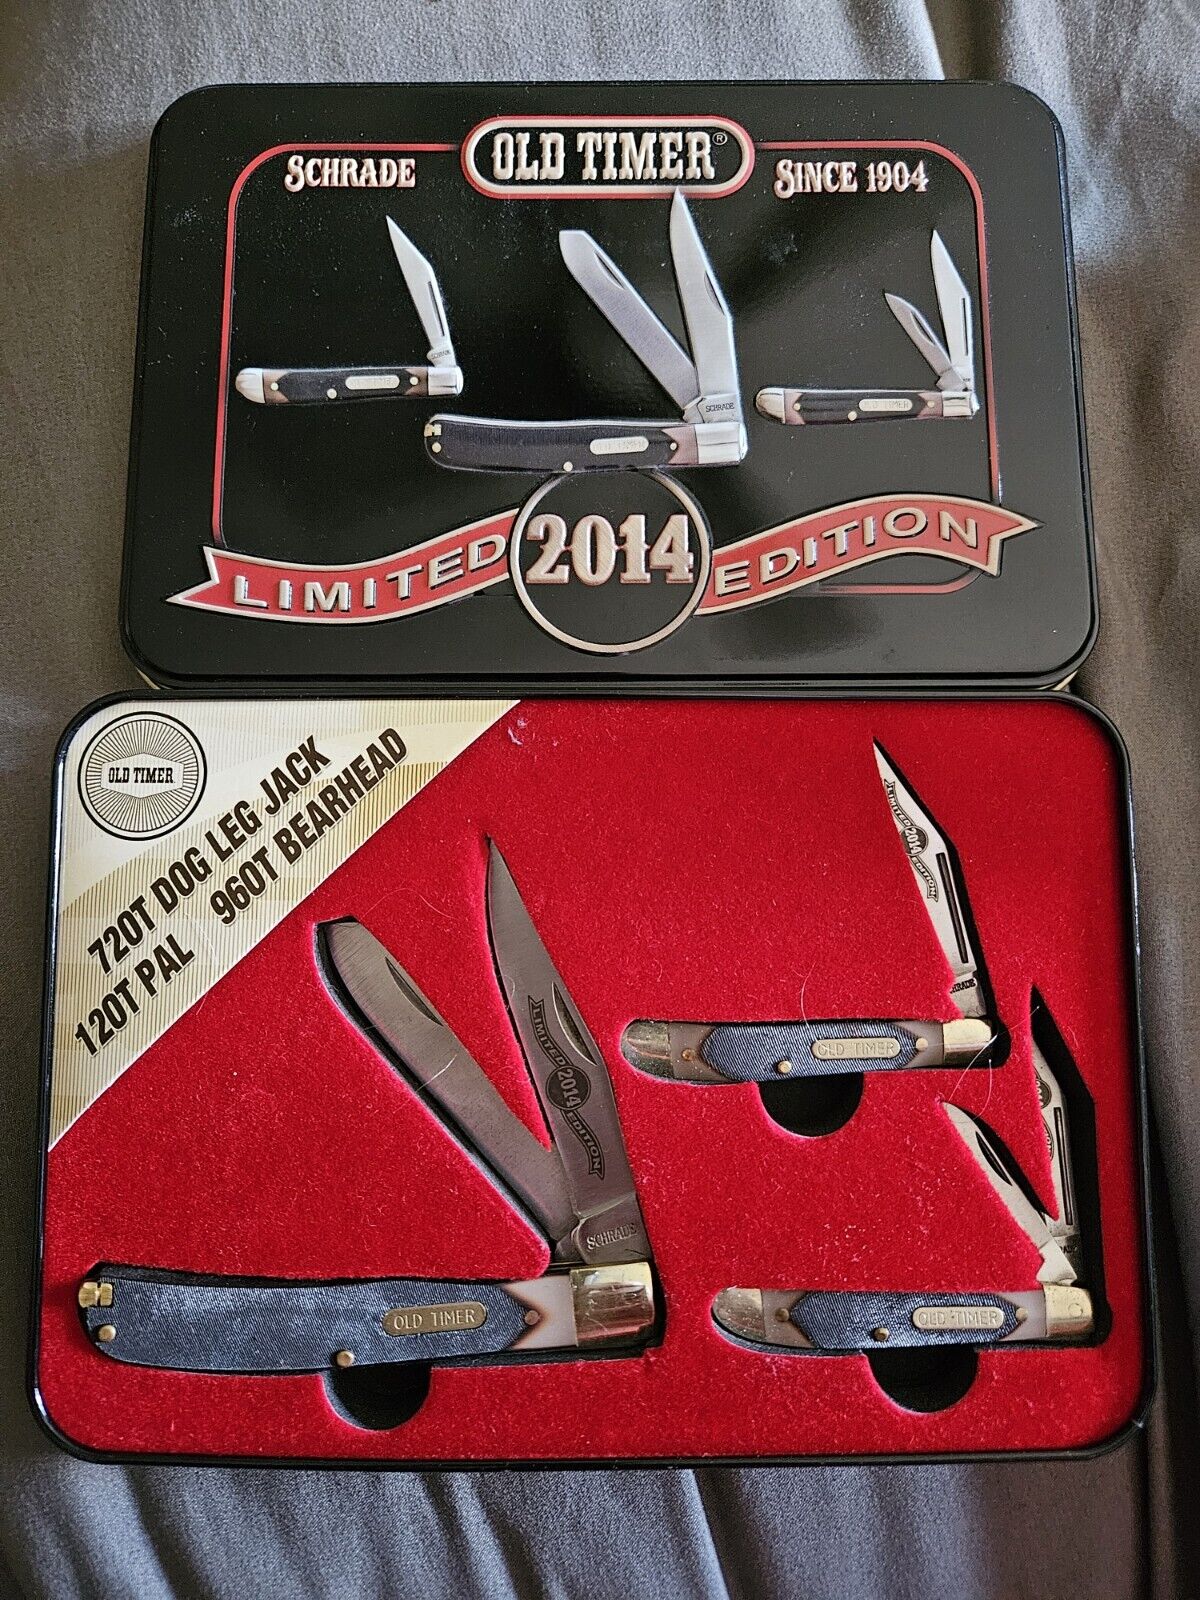 Schrade Old Timer Limited Edition Knife Set.